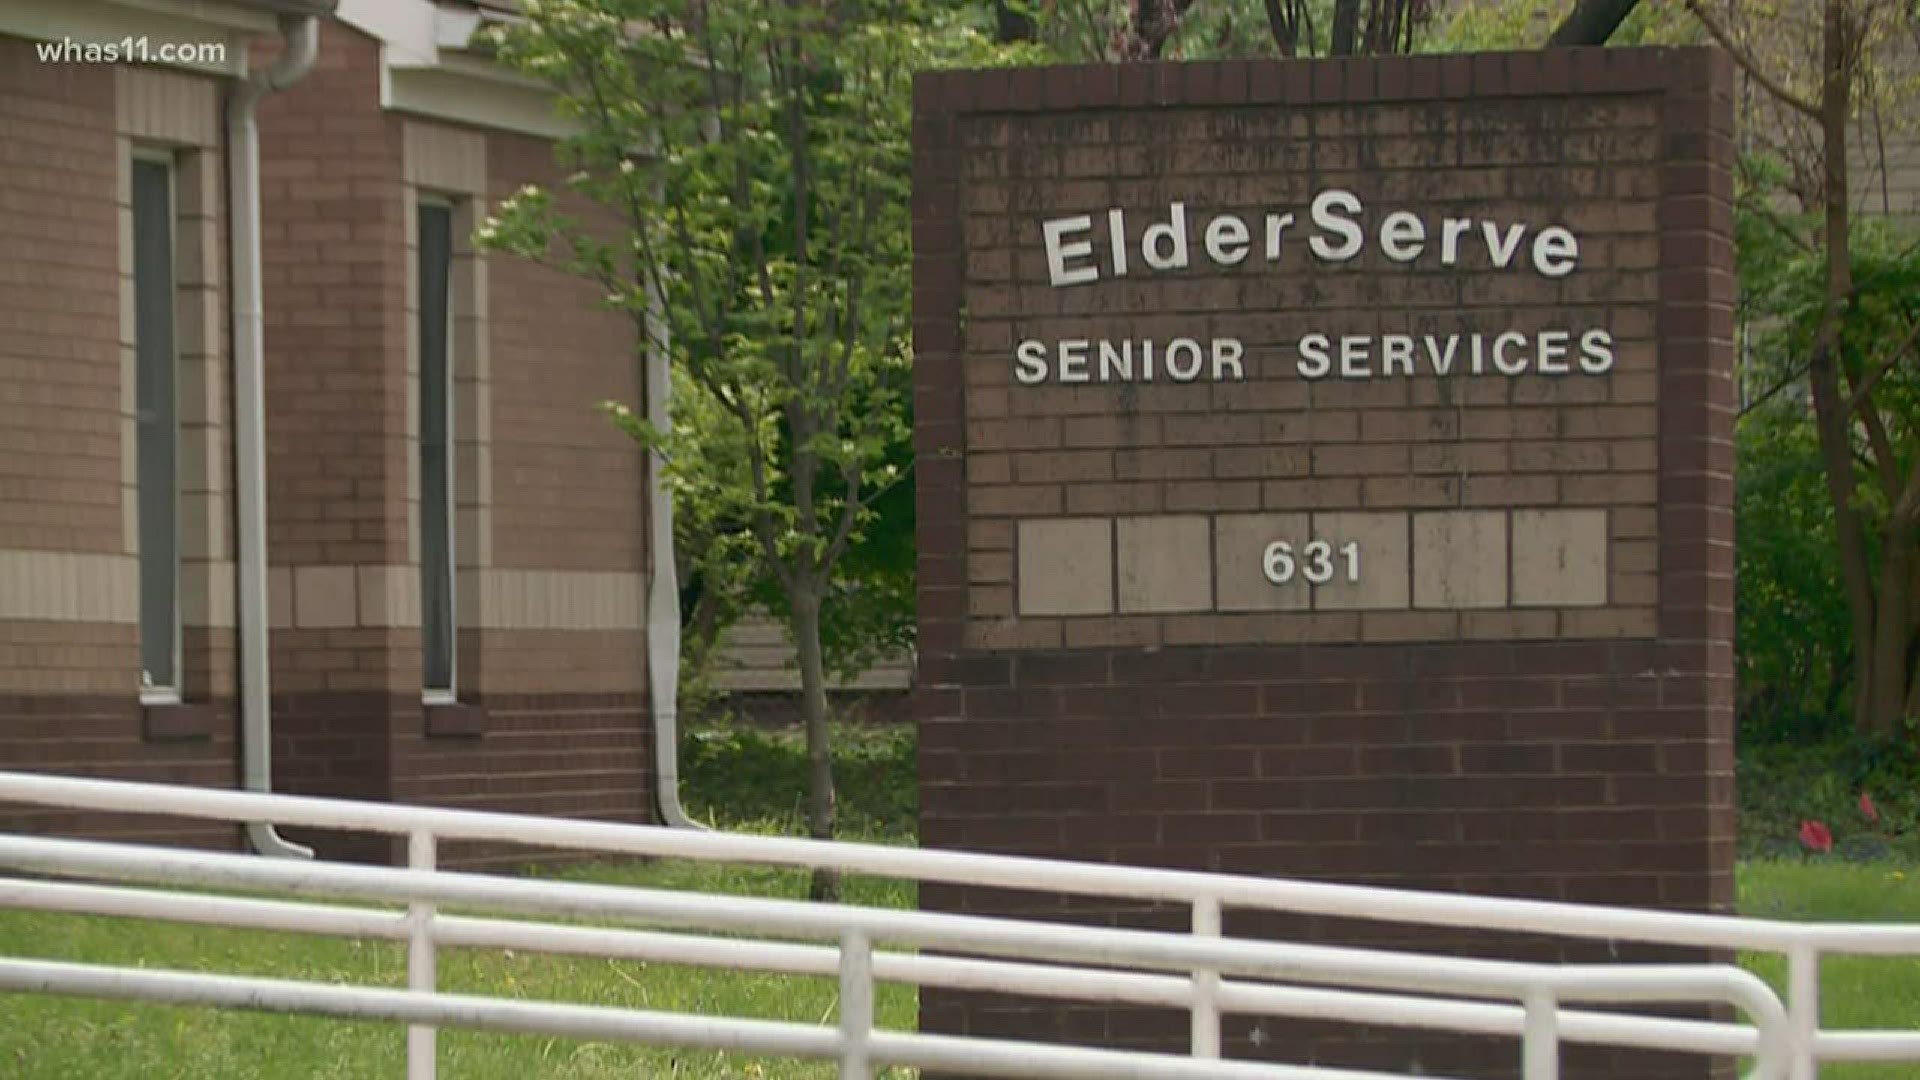 ElderServe was hit by burglars six times in two weeks.